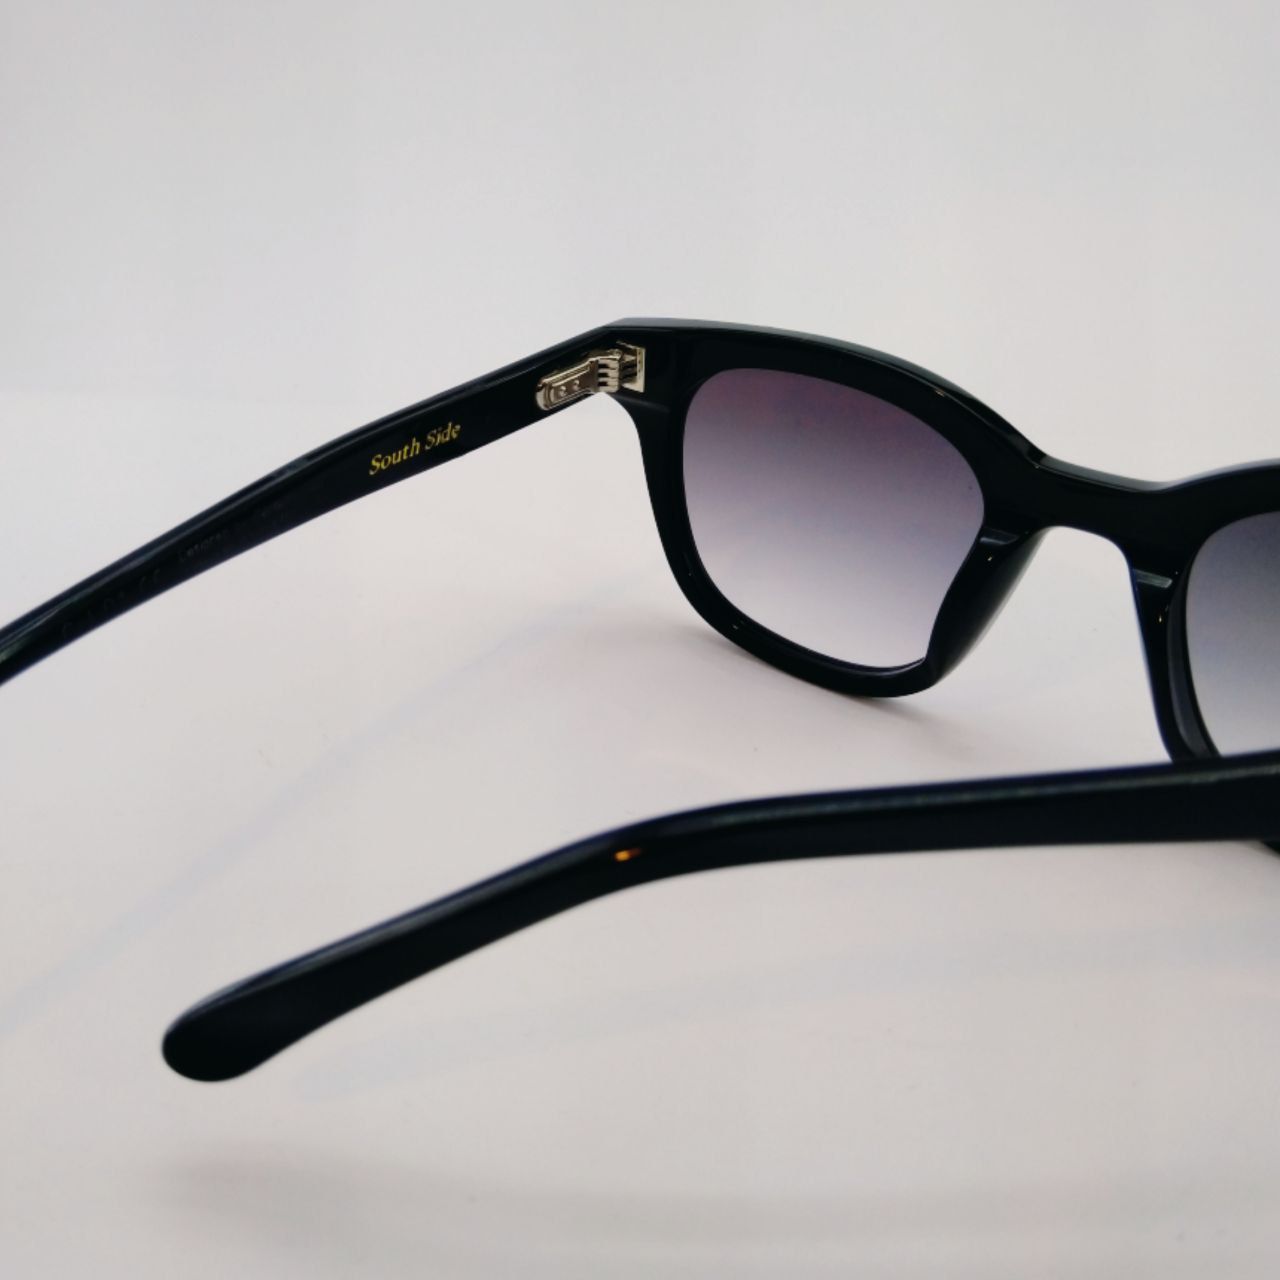 عینک آفتابی زنانه جنتل مانستر مدل South Side -  - 5